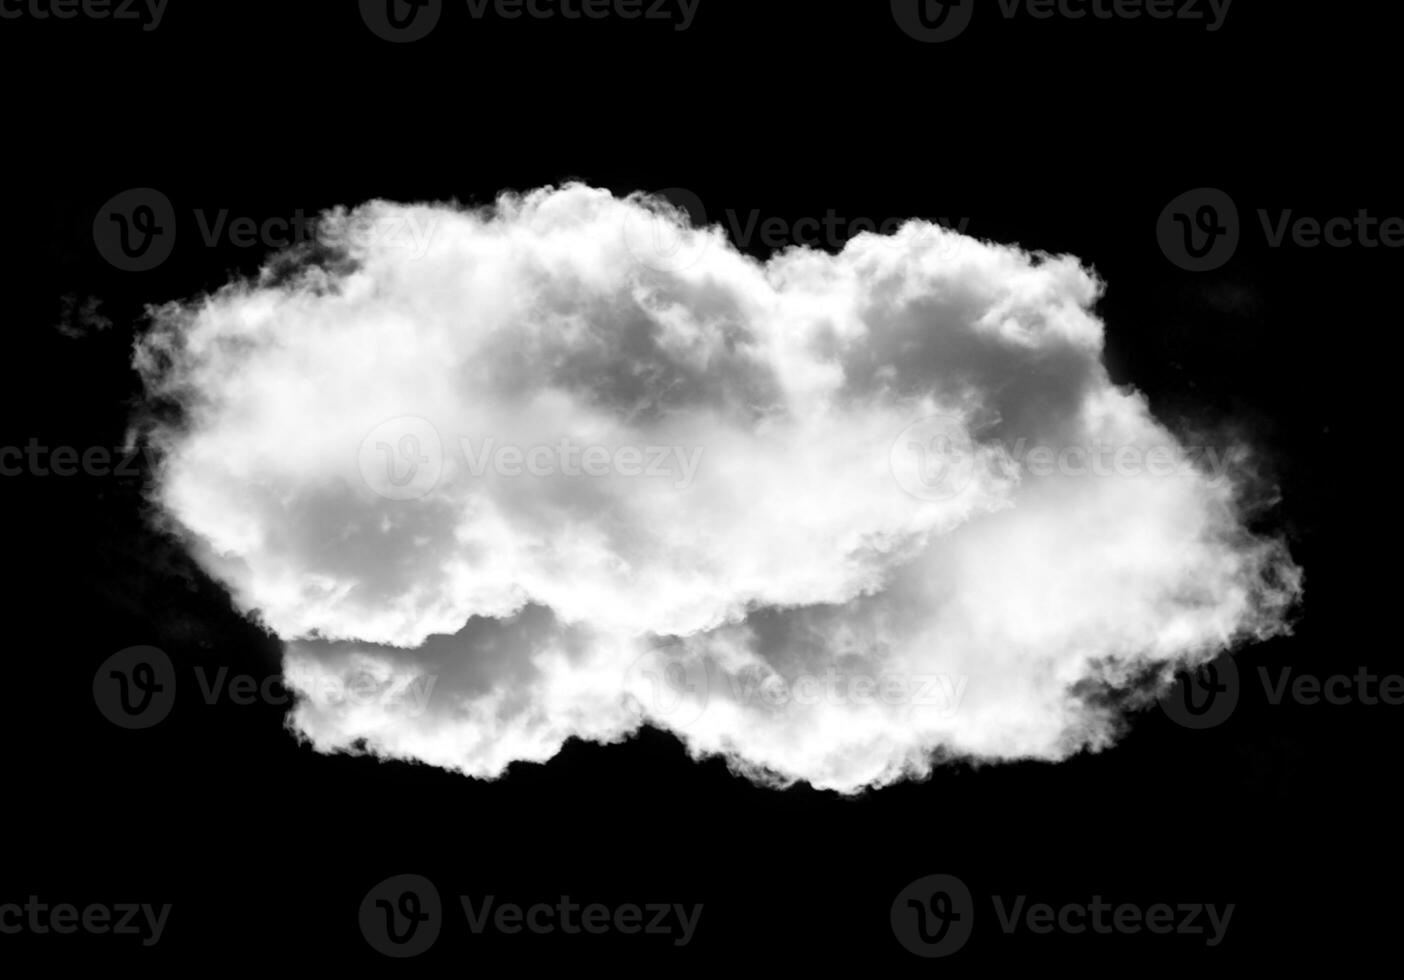 realistisk moln form isolerat över svart bakgrund foto